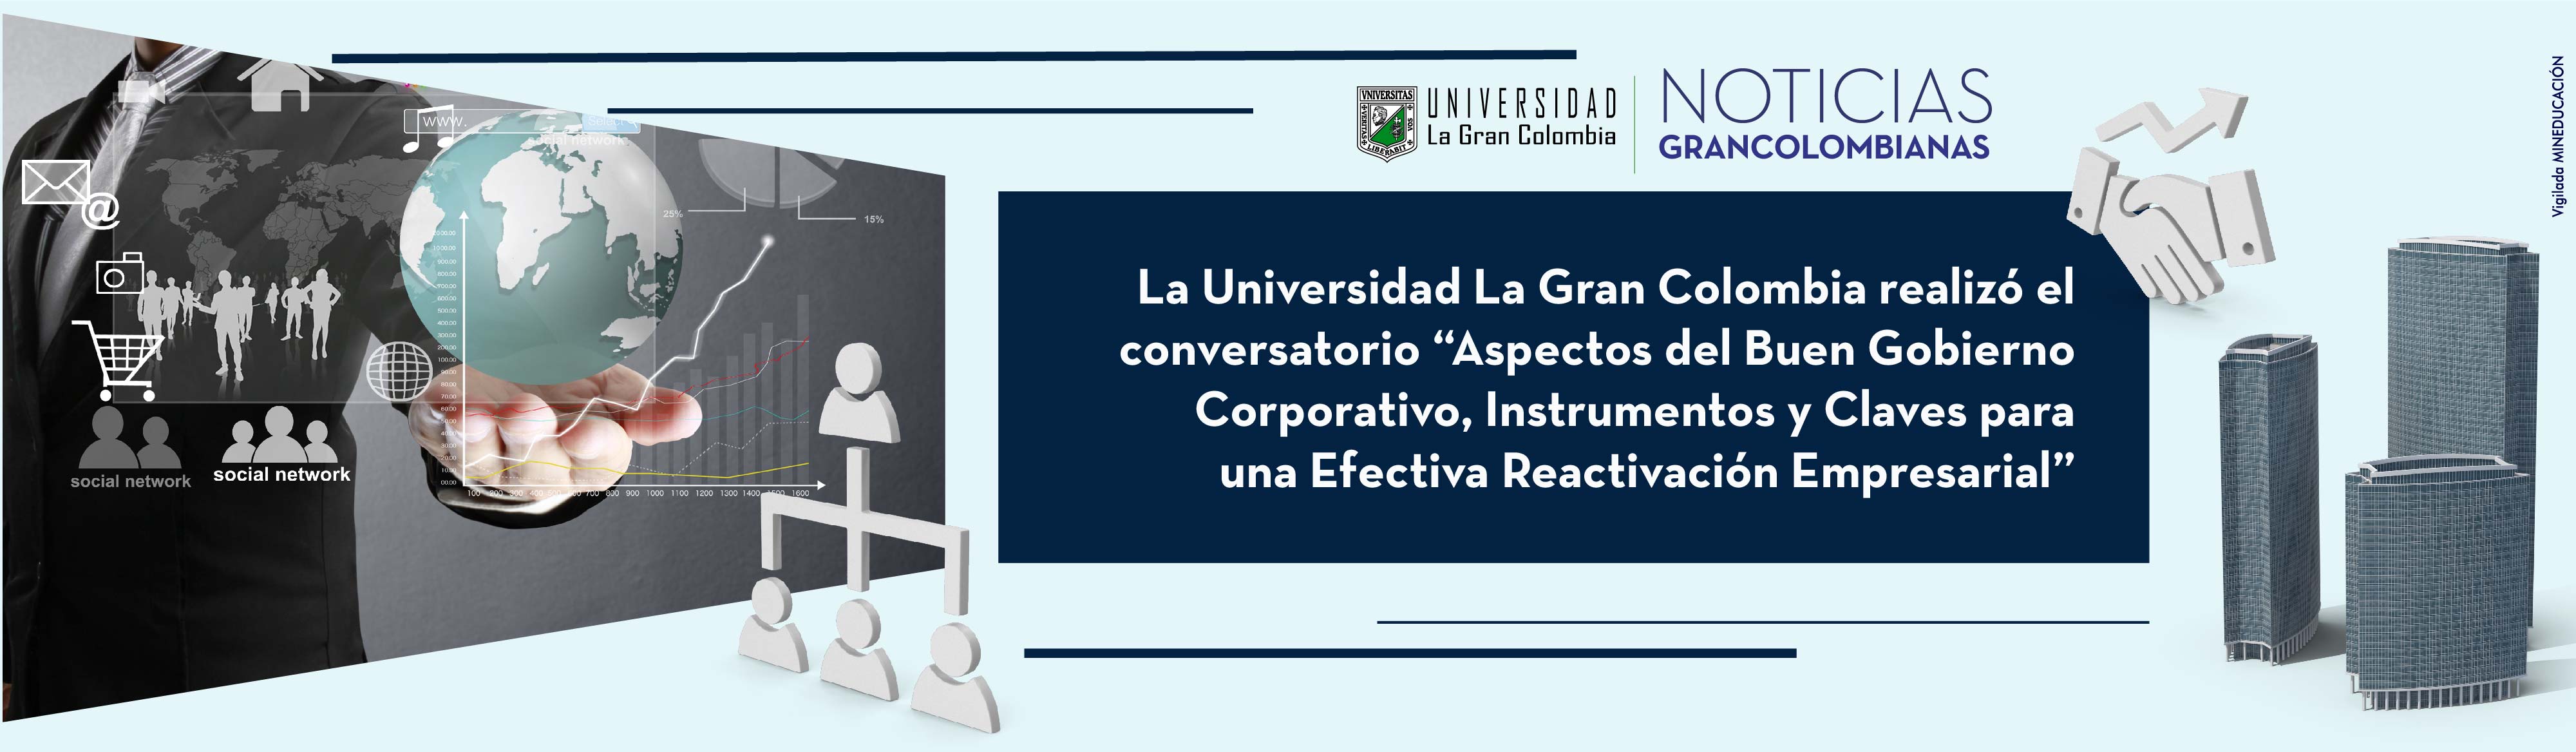 La Universidad La Gran Colombia realizó el conversatorio “Aspectos del Buen Gobierno Corporativo, Instrumentos y Claves para una Efectiva Reactivación Empresarial”